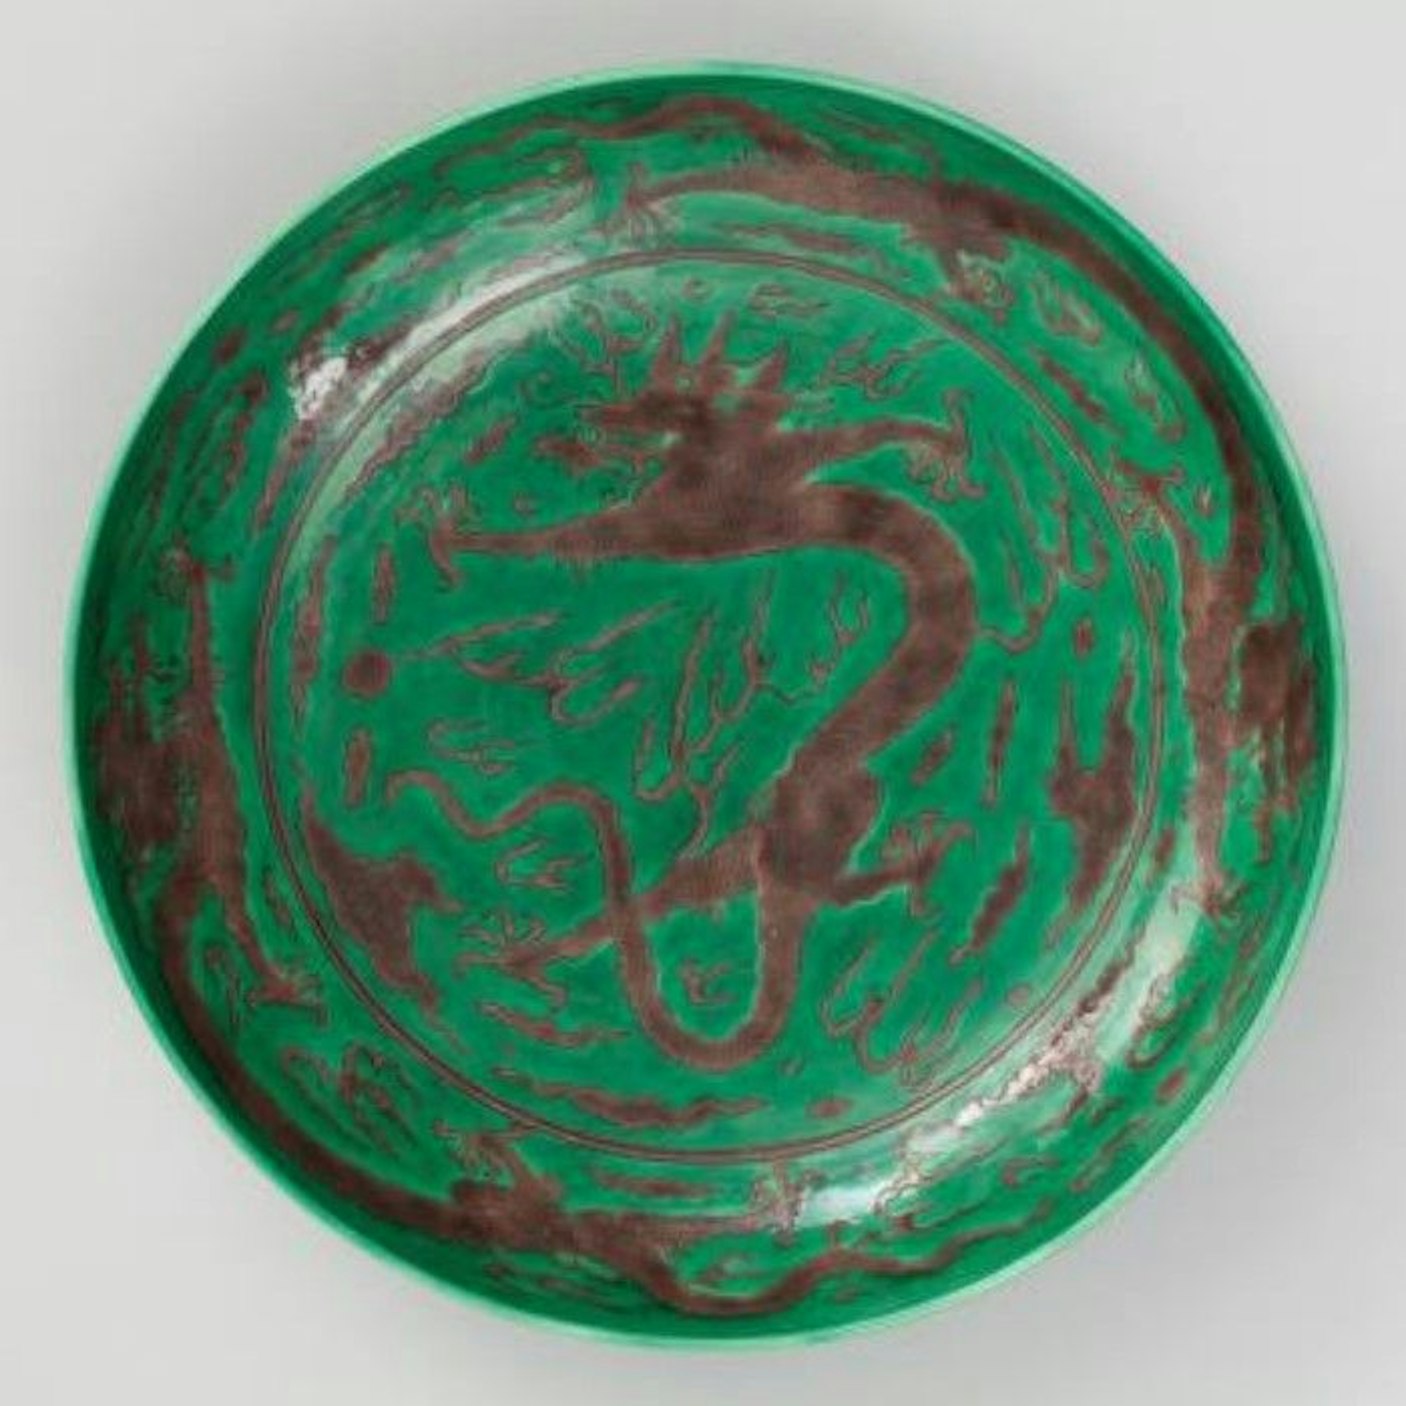 Drachenschale ///Material: Porzellan, Jingdezhen, Unterglasurblau, Biscuit-Email///Herkunft: China, Qing-Dynastie, Kangxi-Marke (1662-1722)///Maße: Durchmesser 31,5 cm